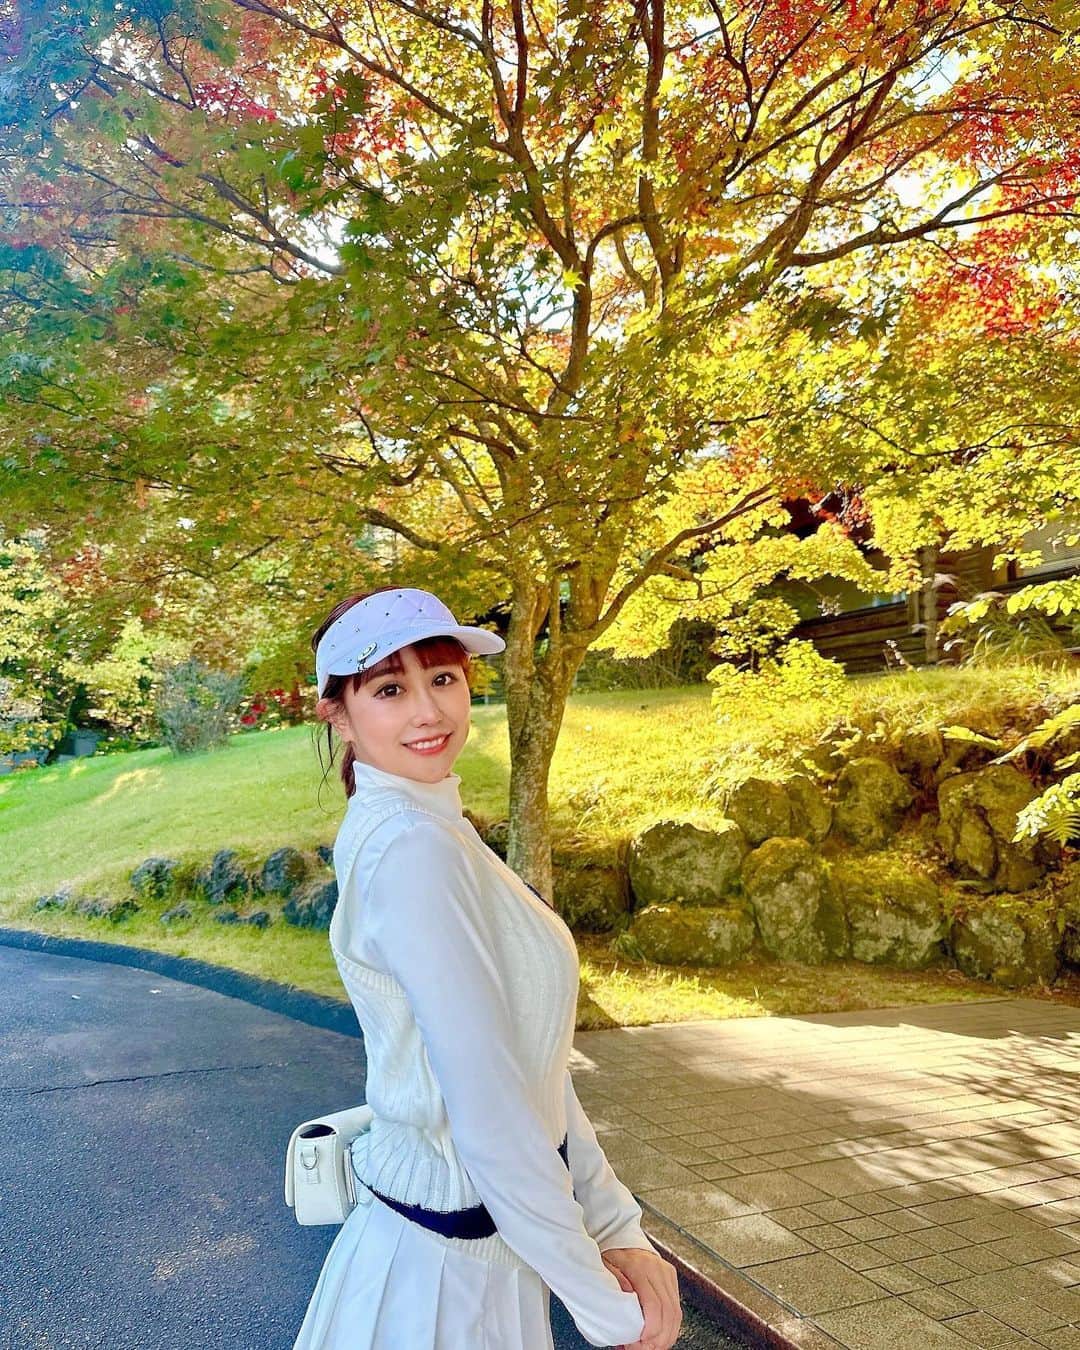 日向カンナのインスタグラム：「初めてのゴルフ遠征へ⛳️軽井沢はもう紅葉がやってきてましたね〜🍁朝は10℃以下でぶるぶるでしたが、お昼は気持ちいい〜秋が1番好きです！そして、軽井沢の朝ごはんといえば「みくりや」さん。（私は初めて知りました🤭） 朝7時半に行ってきましたが、もう数組待ち。。人気だぁ！ ゴルフ前にあったか〜い優しい朝ごはんを食べて、パワーをいただきました🌼  ゴルフで繋がれる方が最近は増えてきたので、ラウンドもお誘いいただけることも増え嬉しいかぎりです✨✨（まだまだぺーぺーなので、ドキドキですが！） 今月はお仕事にも誘っていただけて、いつどこに出逢いがあるか不思議な人生です☺️ありがたや。  そして、とうとうゴルフを始めて1年が経ちました… この日のスコアは…なんと！100ぴったり❗️ 100の壁、恐るべし！！もう一息。 スイングはやはり、ラウンドに出ると練習通りにはいかないけれど、お仕事の合間に時間を作って教わったことを反復練習するぞ〜😊✨✨  そんないつも私が練習している、六本木カントリーゴルフクラブにて、ゴルフオフ会&シュミレーションゲームを11/25に開催します⛳️✨✨ ゴルフをやられてる方、インスタで繋がってくれている方、やっと逢える方いらっしゃるのかなぁ？ ドキドキだけど、皆さんとゴルフを通じて一緒に楽しめる企画沢山考えますね🫶🏻（予約先はお待ちを！）  皆さん、遊びに来てくれますか！？  #軽井沢 #ゴルフ女子 #ゴルフ #ゴルフコーデ #ゴルフウェア #ゴルフ初心者 #ゴルフスイング #ゴルフ練習 #ゴルフ好き #ゴルフ仲間募集 #ゴルフ練習場 #ゴルフレッスン  #インフルエンサー #ゴルフファッション #スポーツ女子 #大人女子 #ゴルフ好きな人と繋がりたい #休日の過ごし方 #趣味の時間 #癒しの時間 #원스 #데일리패션  #소통 #데일리룩 #일상  #japanease #좋아요」